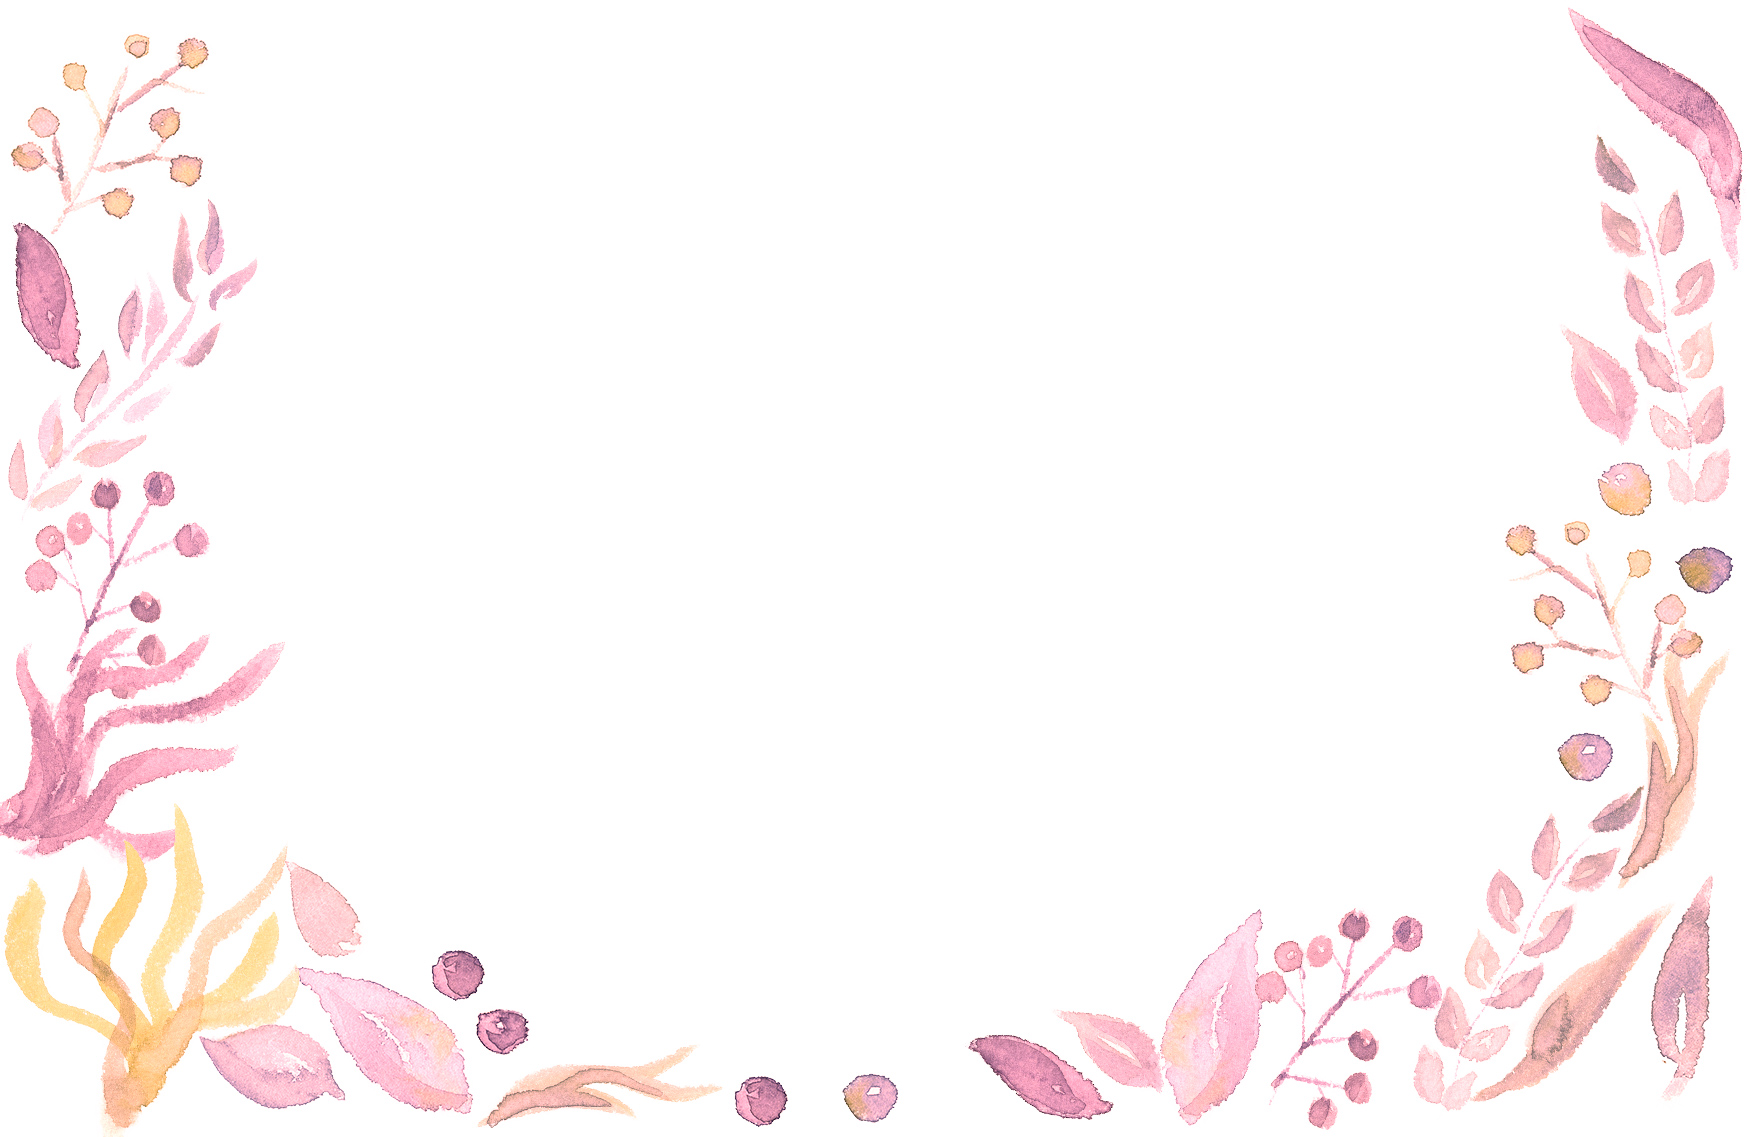 手書きイラスト無料 水彩 葉っぱ 背景 ピンク色 公式 イラスト素材サイト イラストダウンロード